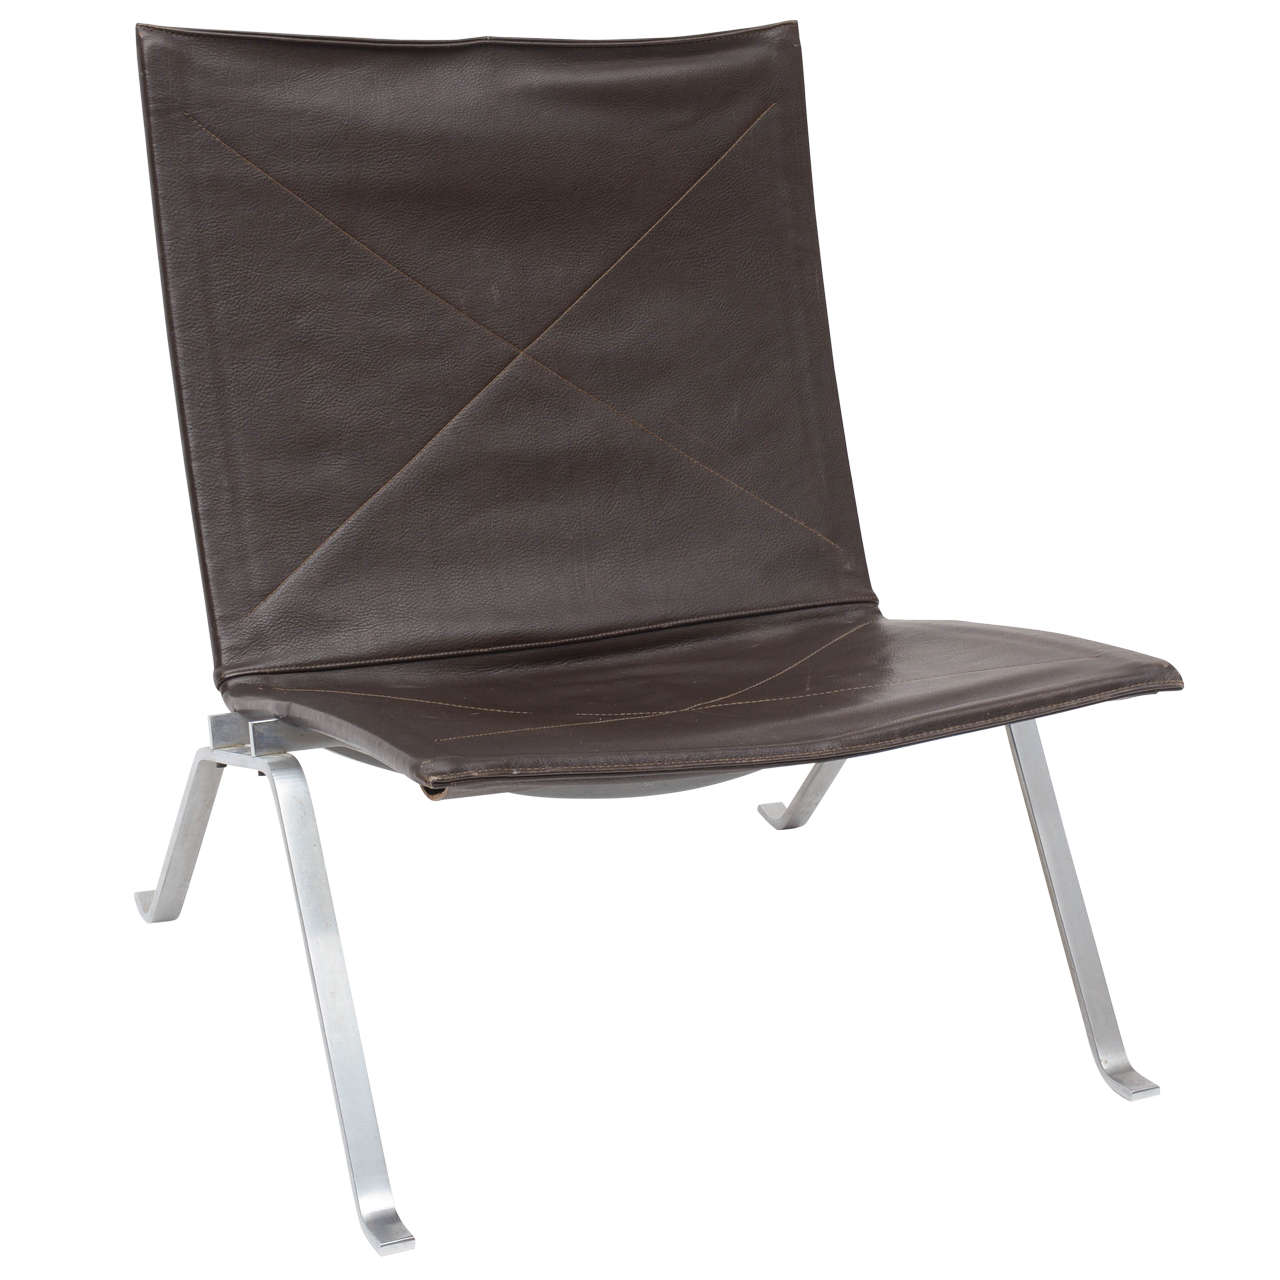 Poul Kjaerholm PK-22 Lounge Chair